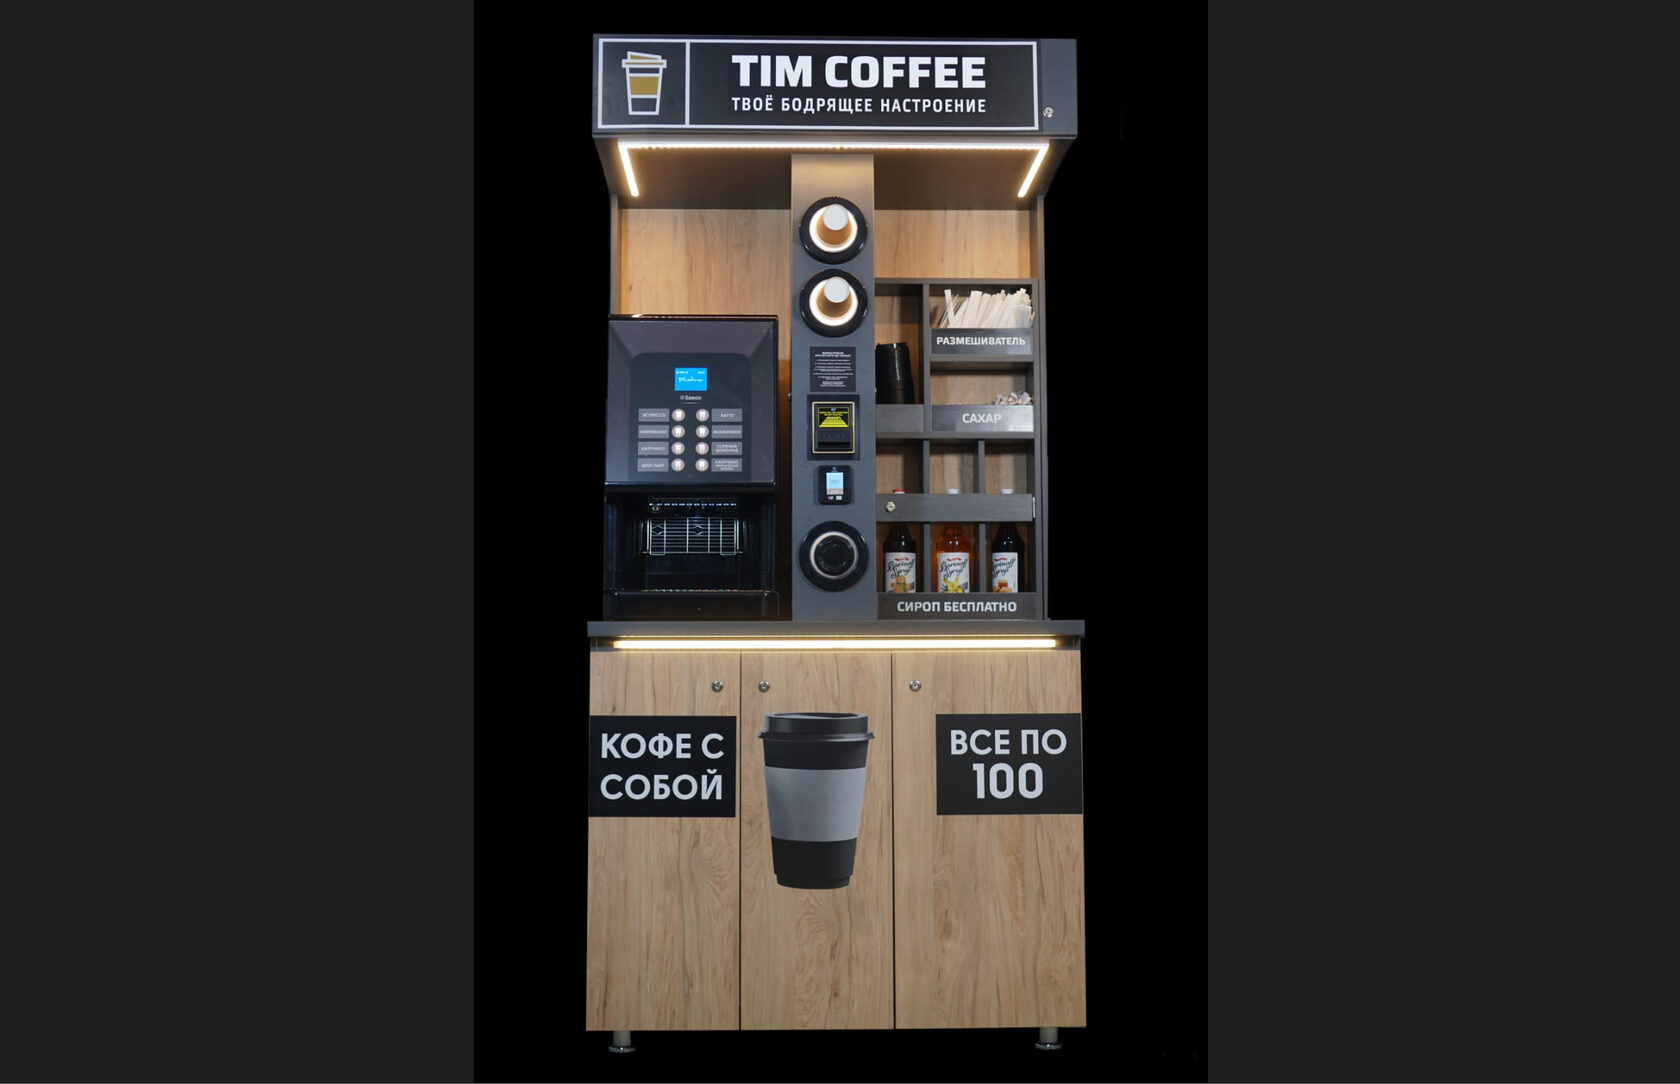 Кофе аппарат самообслуживания для бизнеса. Кофе мейк кофейни самообслуживания. Малый бизнес кофе. Кофе поинт купить без франшизы самообслуживания. Кофейня самообслуживания кофе ми.